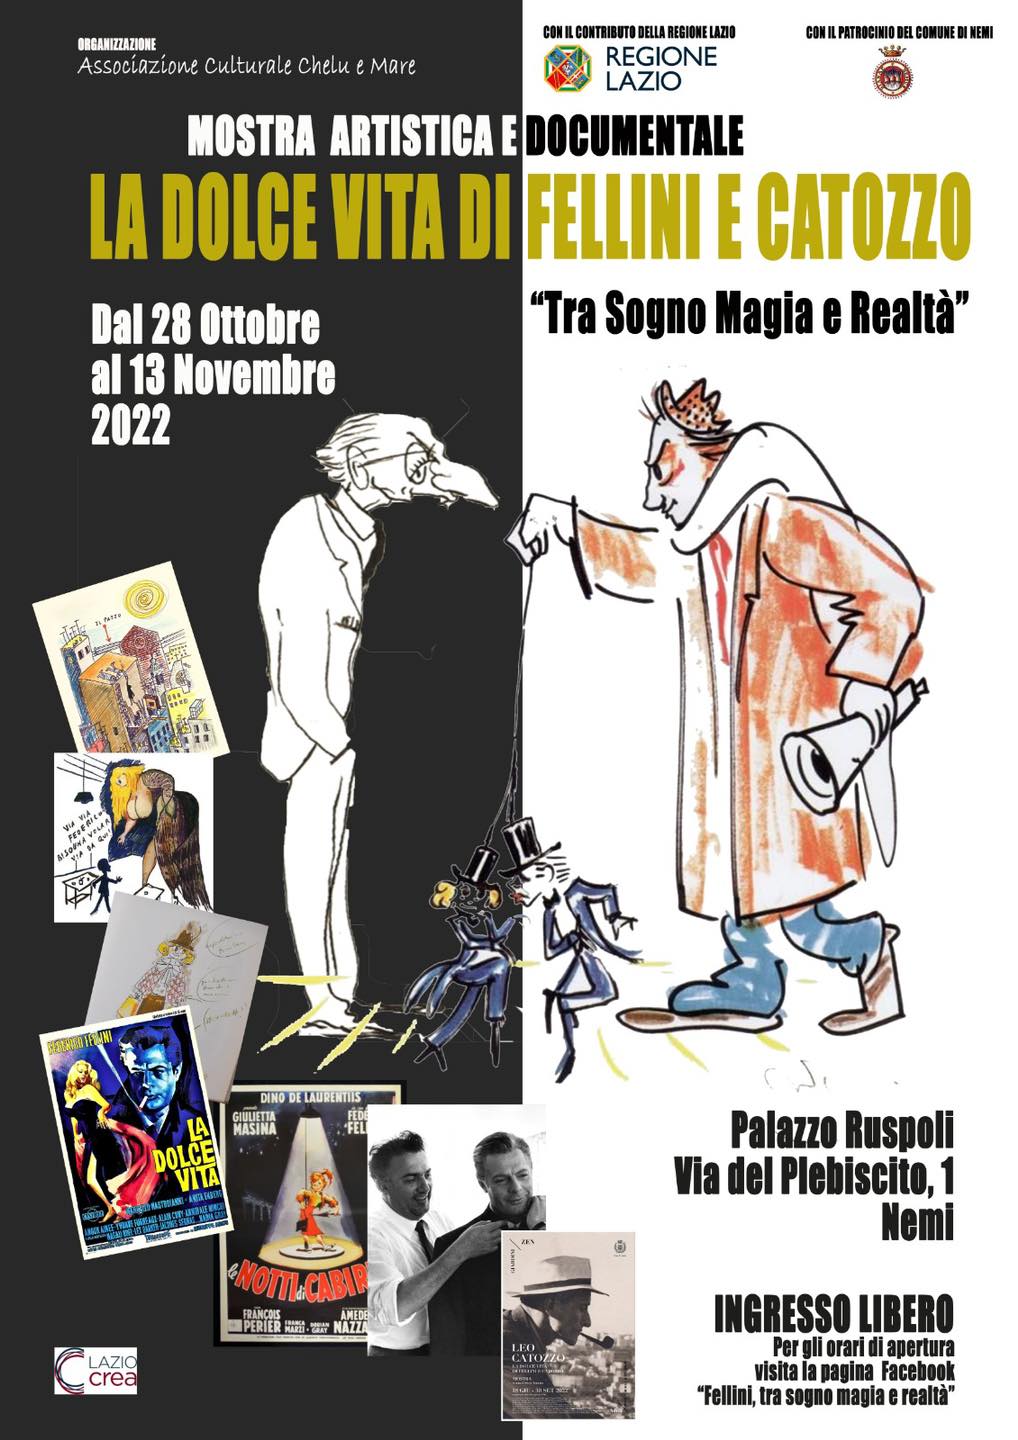 https://www.lacicala.org/immagini_news/27-10-2022/la-dolce-vita-di-fellini-e-catozzo-dal-28-ottobre-al-13-novembre-2022-a-nemi-.jpg